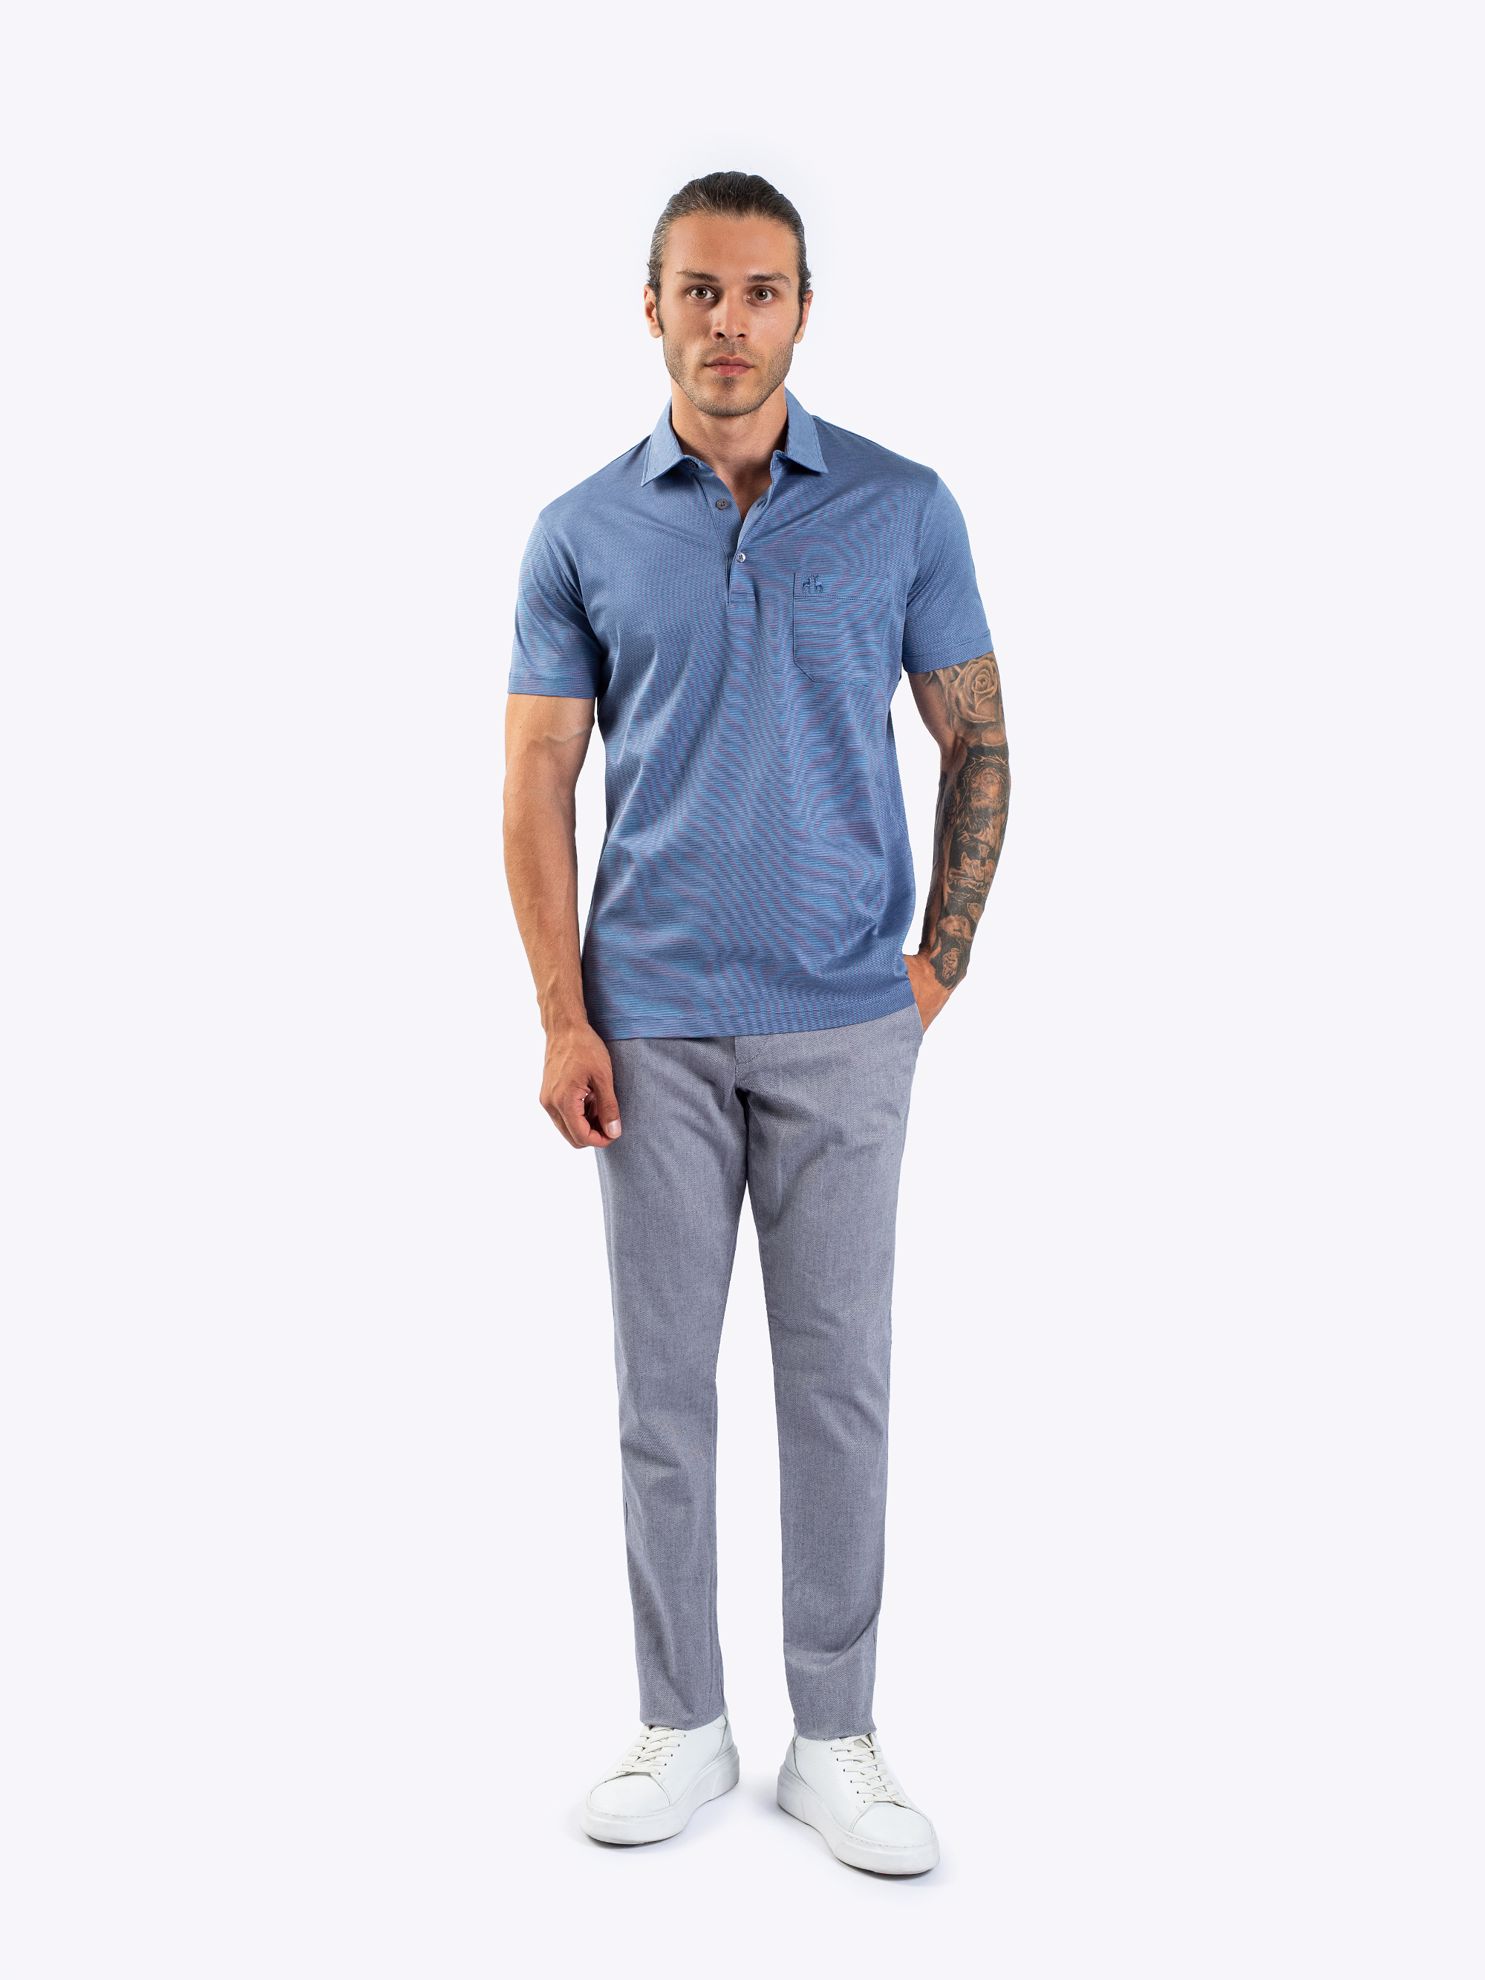 Karaca Erkek Regular Fit Polo Yaka Tişört-Mavi. ürün görseli